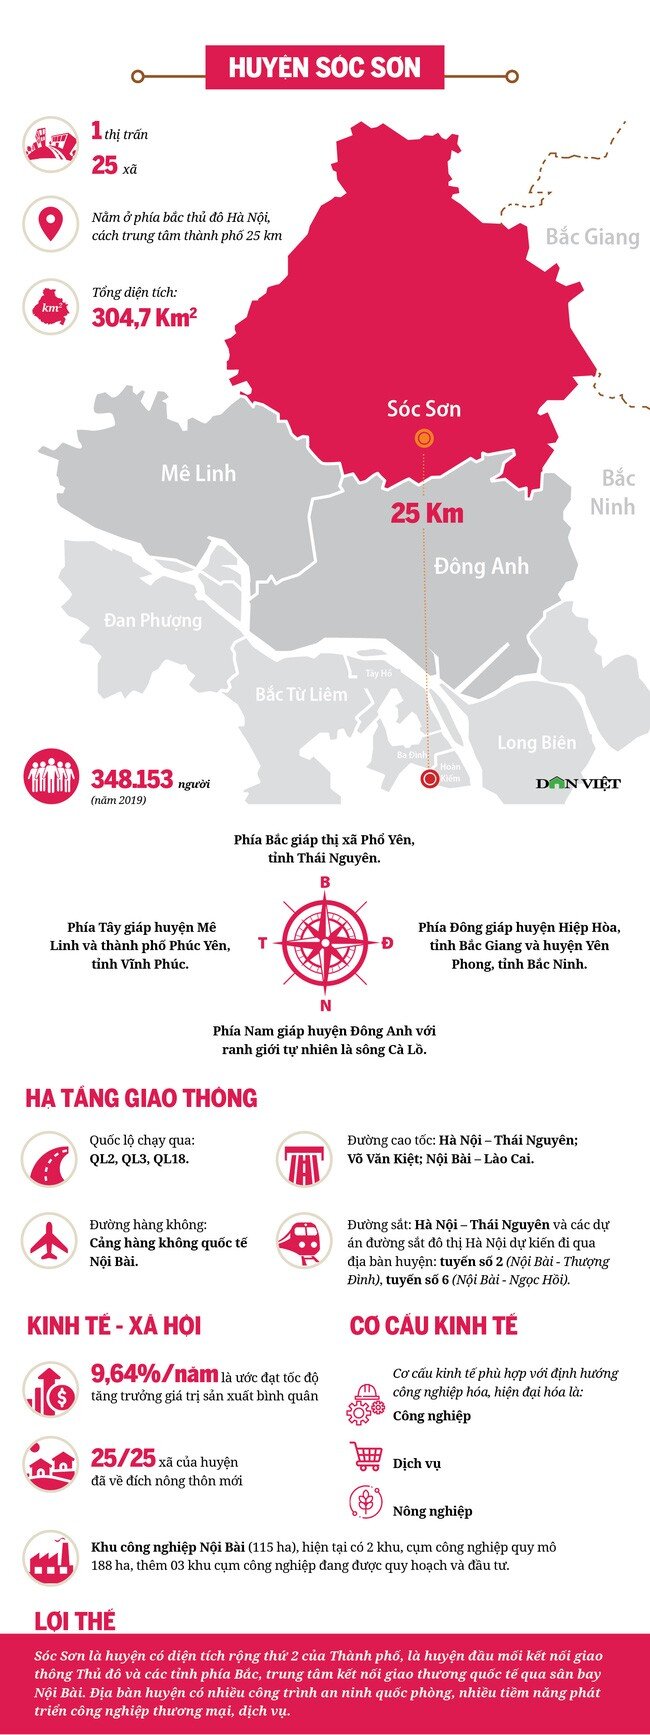 Thông tin về 3 huyện được đề xuất lên thành phố trực thuộc Thủ đô Hà Nội